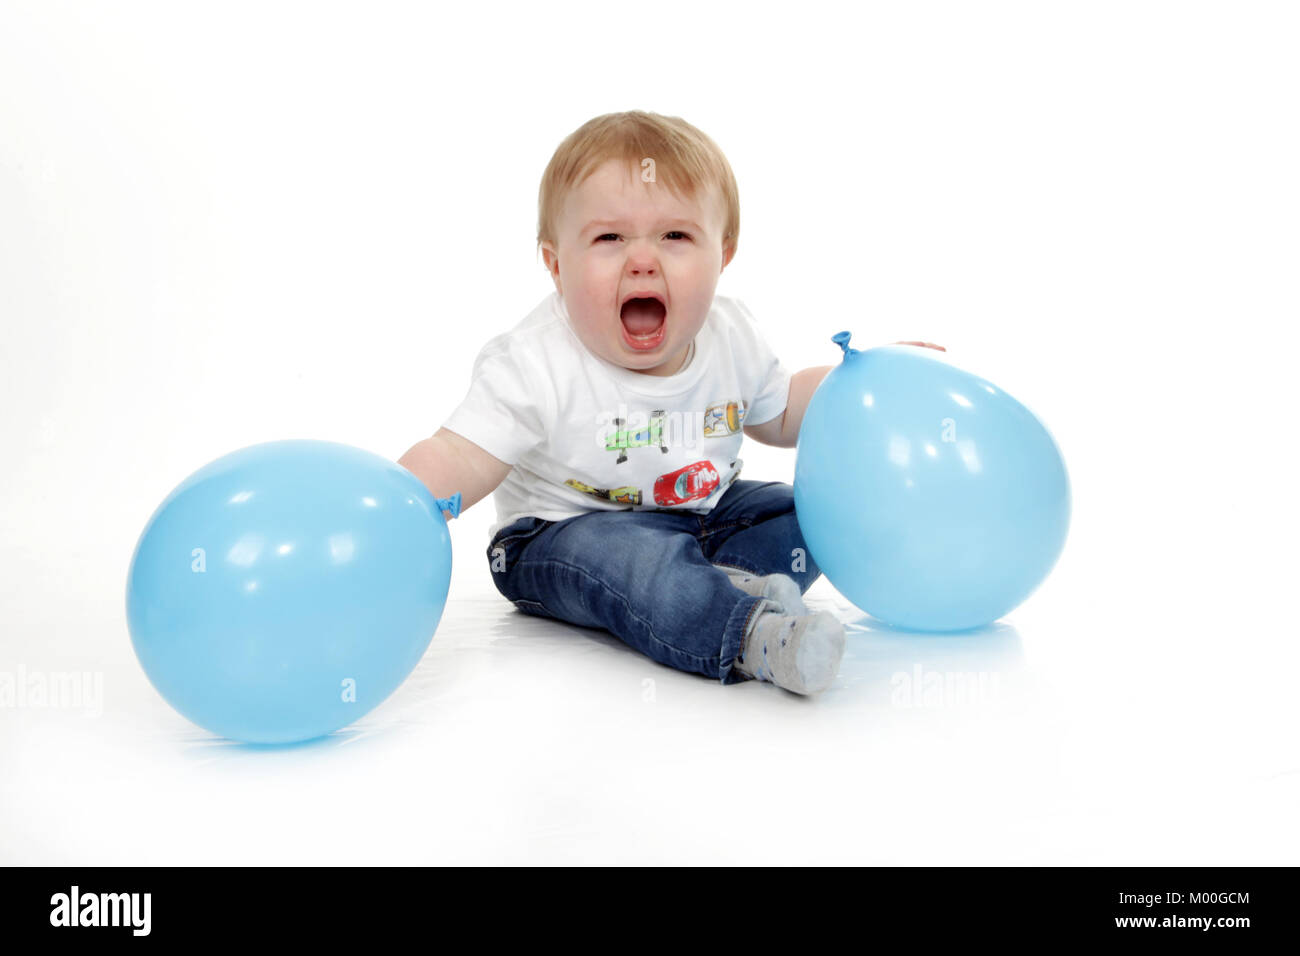 Bimbi aggressivi, Bad Behavior, temper tantrum, 1 anno vecchio ragazzo, malattia mentale Foto Stock